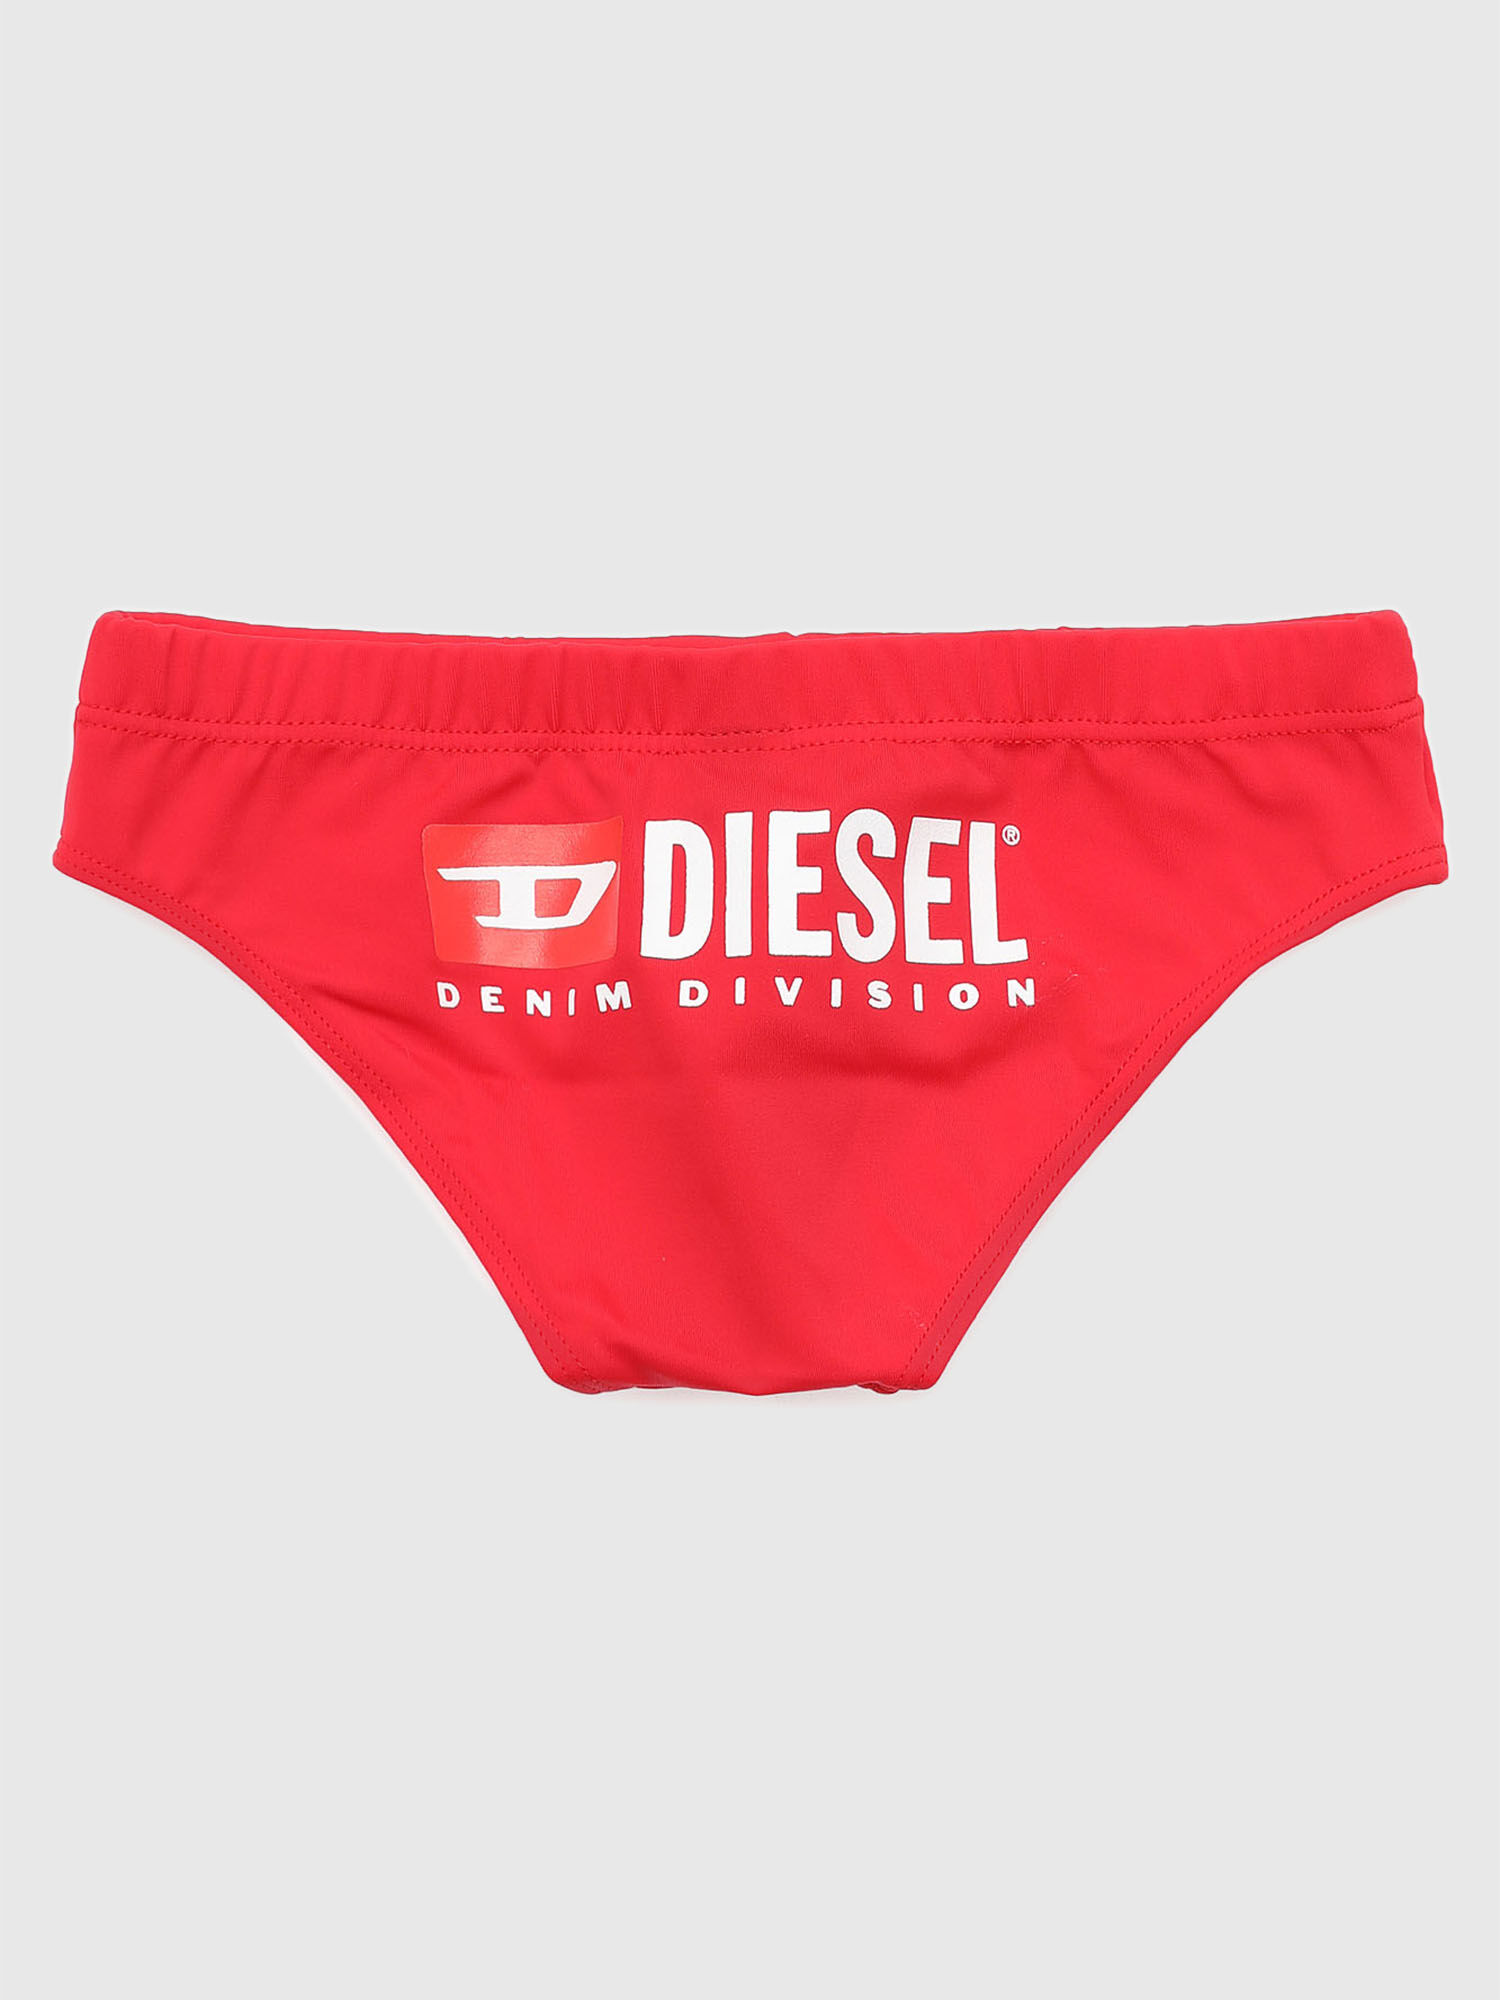 Diesel - MOZER, Red - Image 2